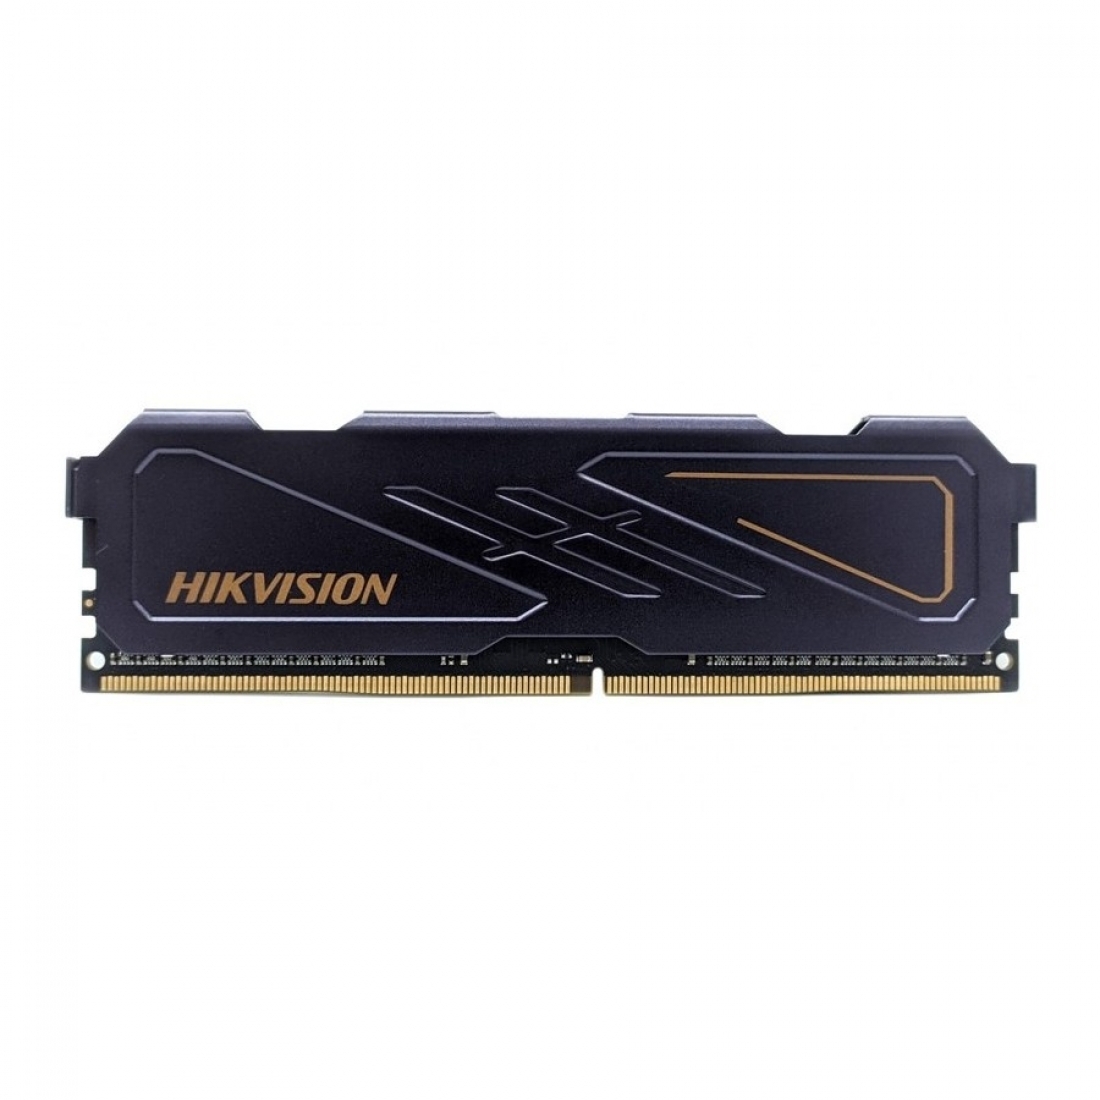 MEMORIA DDR4 8GB HIKVISION 3200MHZ U10 BLACK